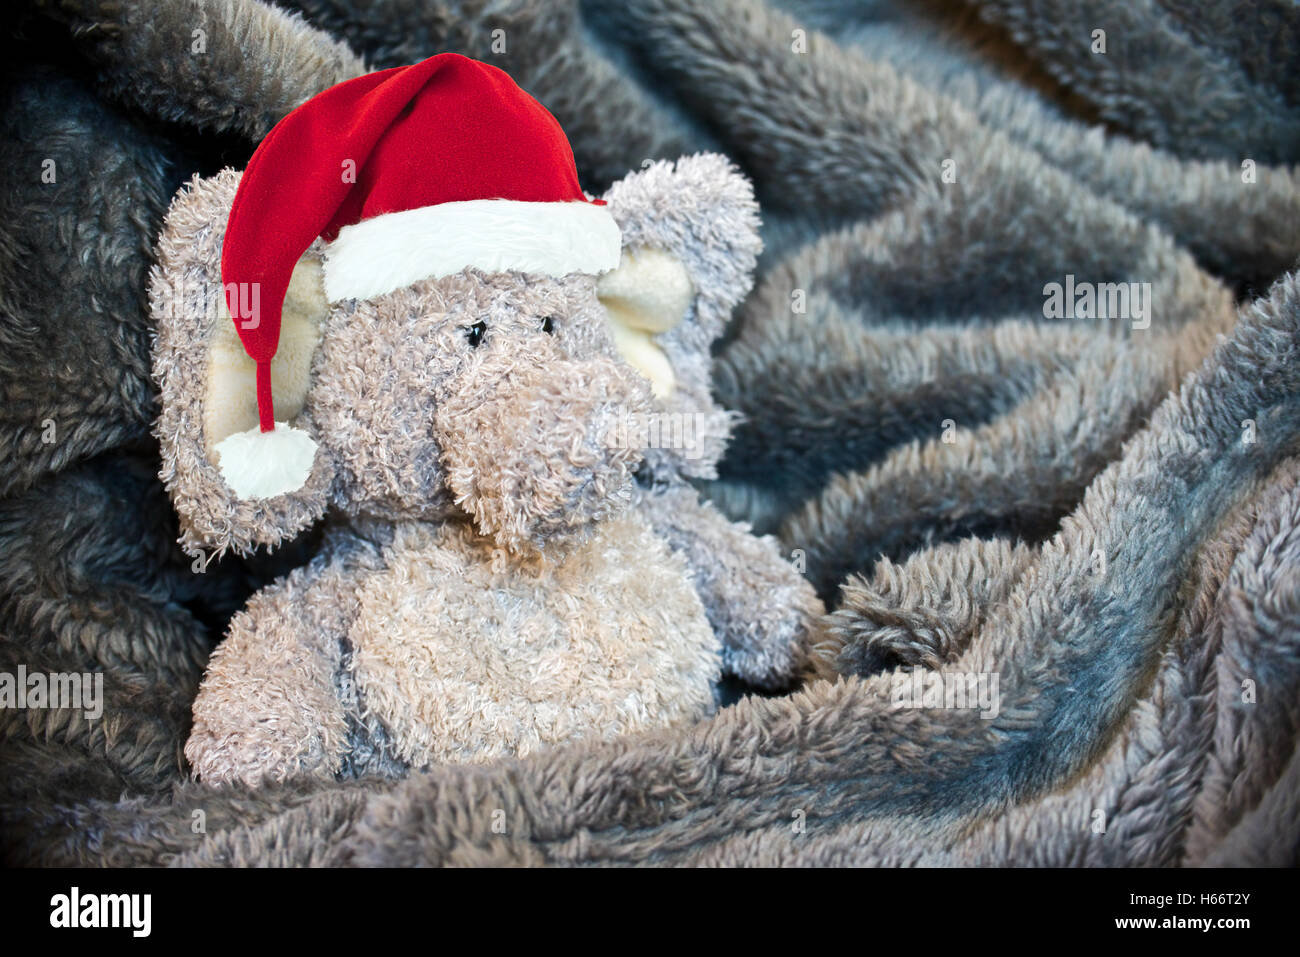 Relleno esponjoso animal con un gorro de Papá Noel en una cobija suave Foto de stock